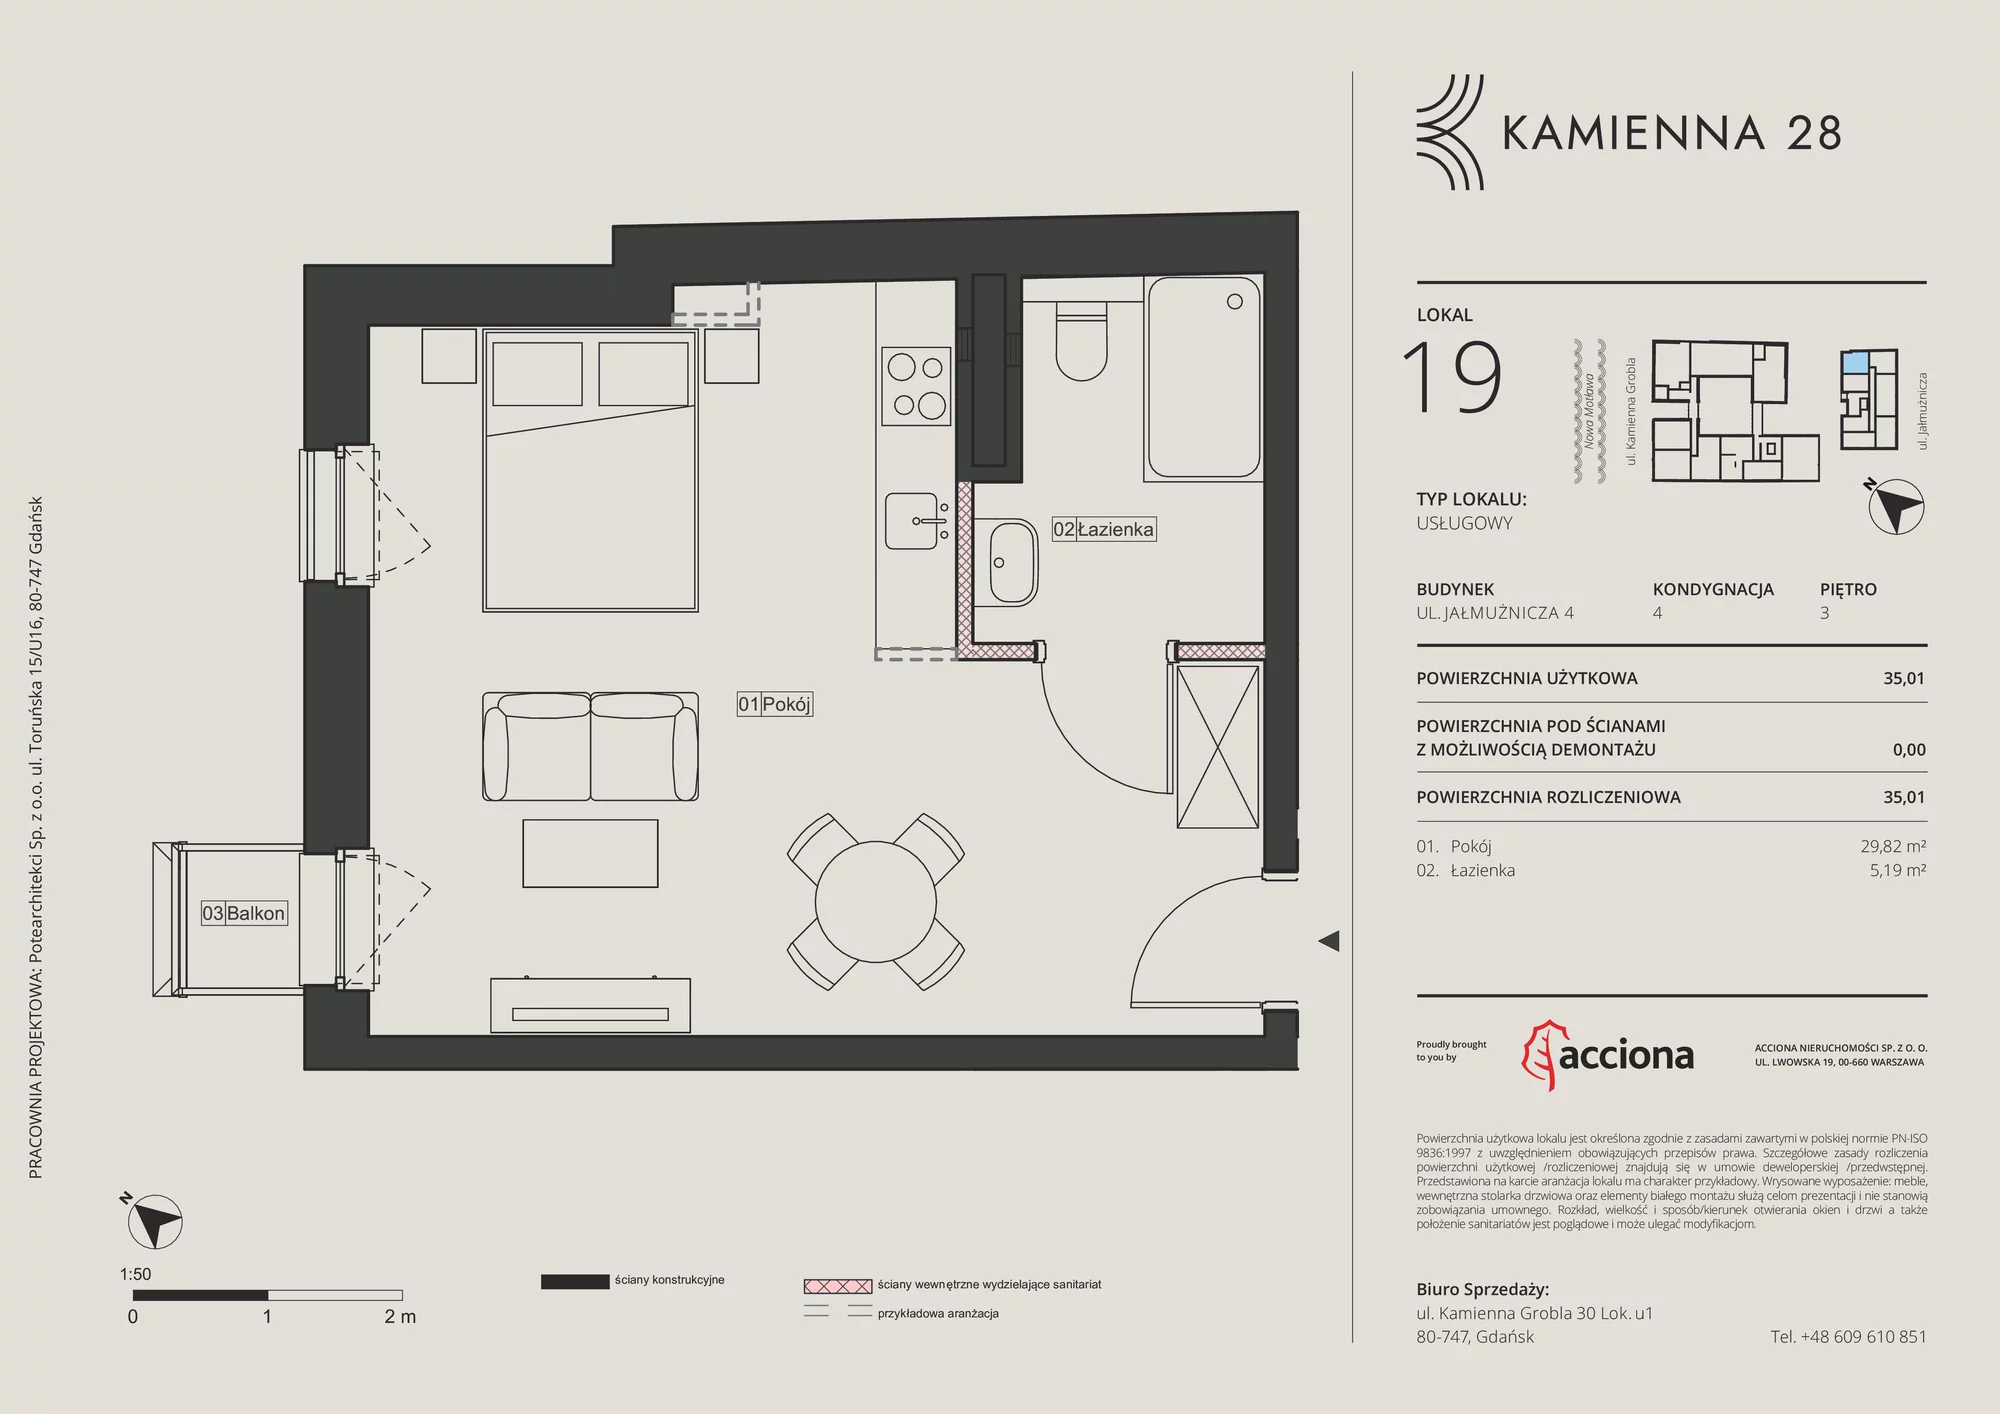 Apartament inwestycyjny 35,01 m², piętro 3, oferta nr 4.19, Kamienna 28 - apartamenty inwestycyjne, Gdańsk, Śródmieście, Dolne Miasto, ul. Jałmużnicza 4